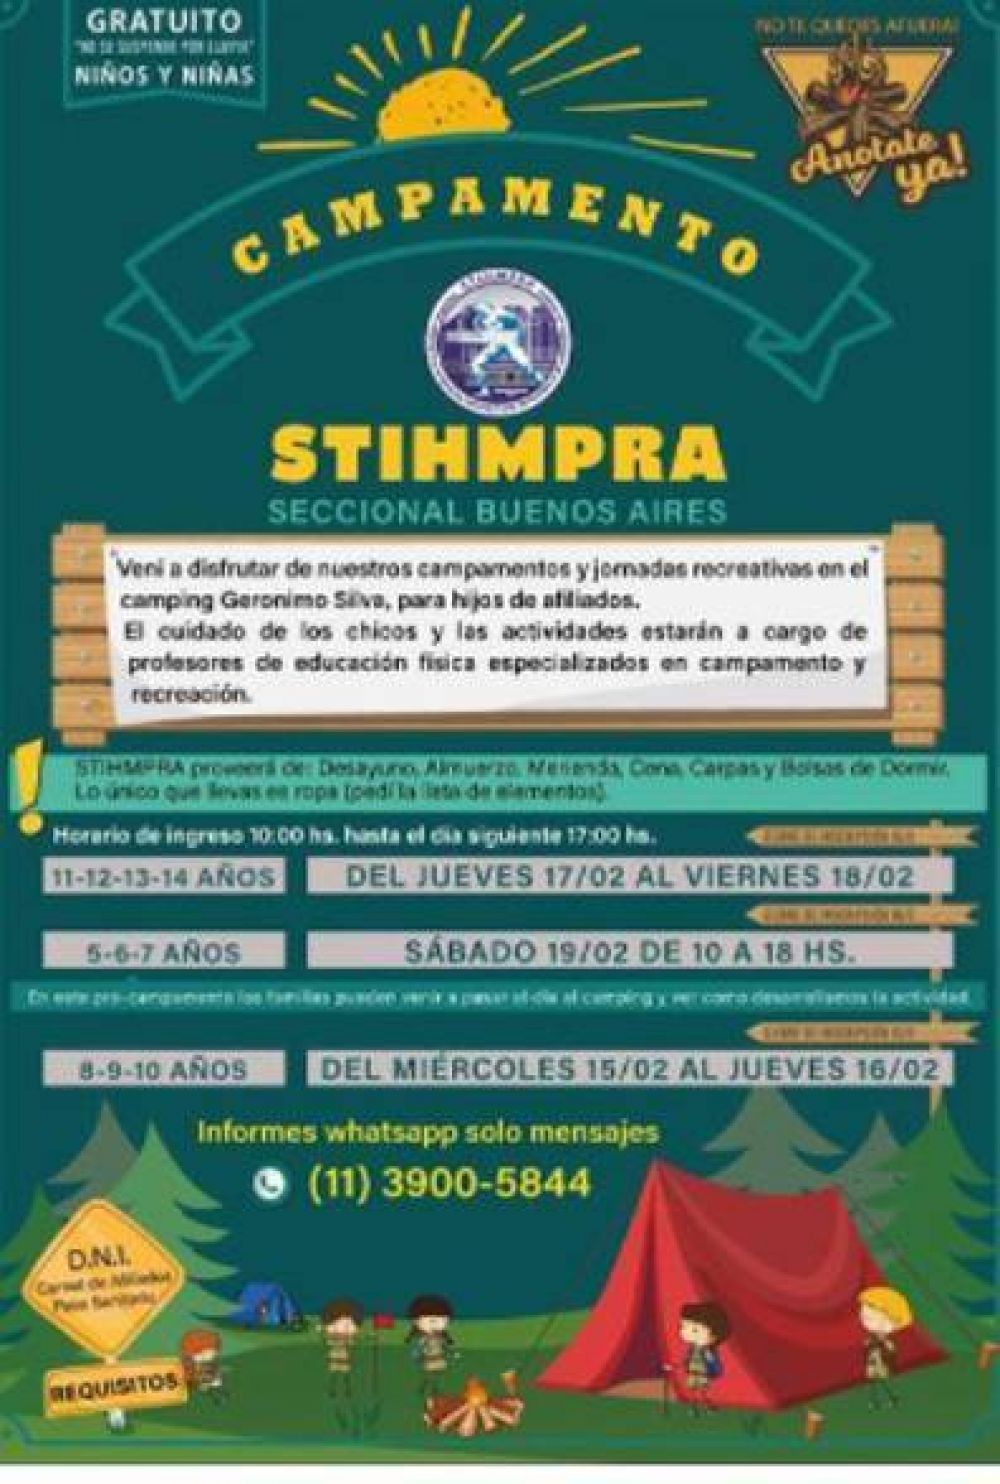 STIHMPRA organiza jornada recreativa y de campamento gratuita para hijos/as de sus afiliados/as